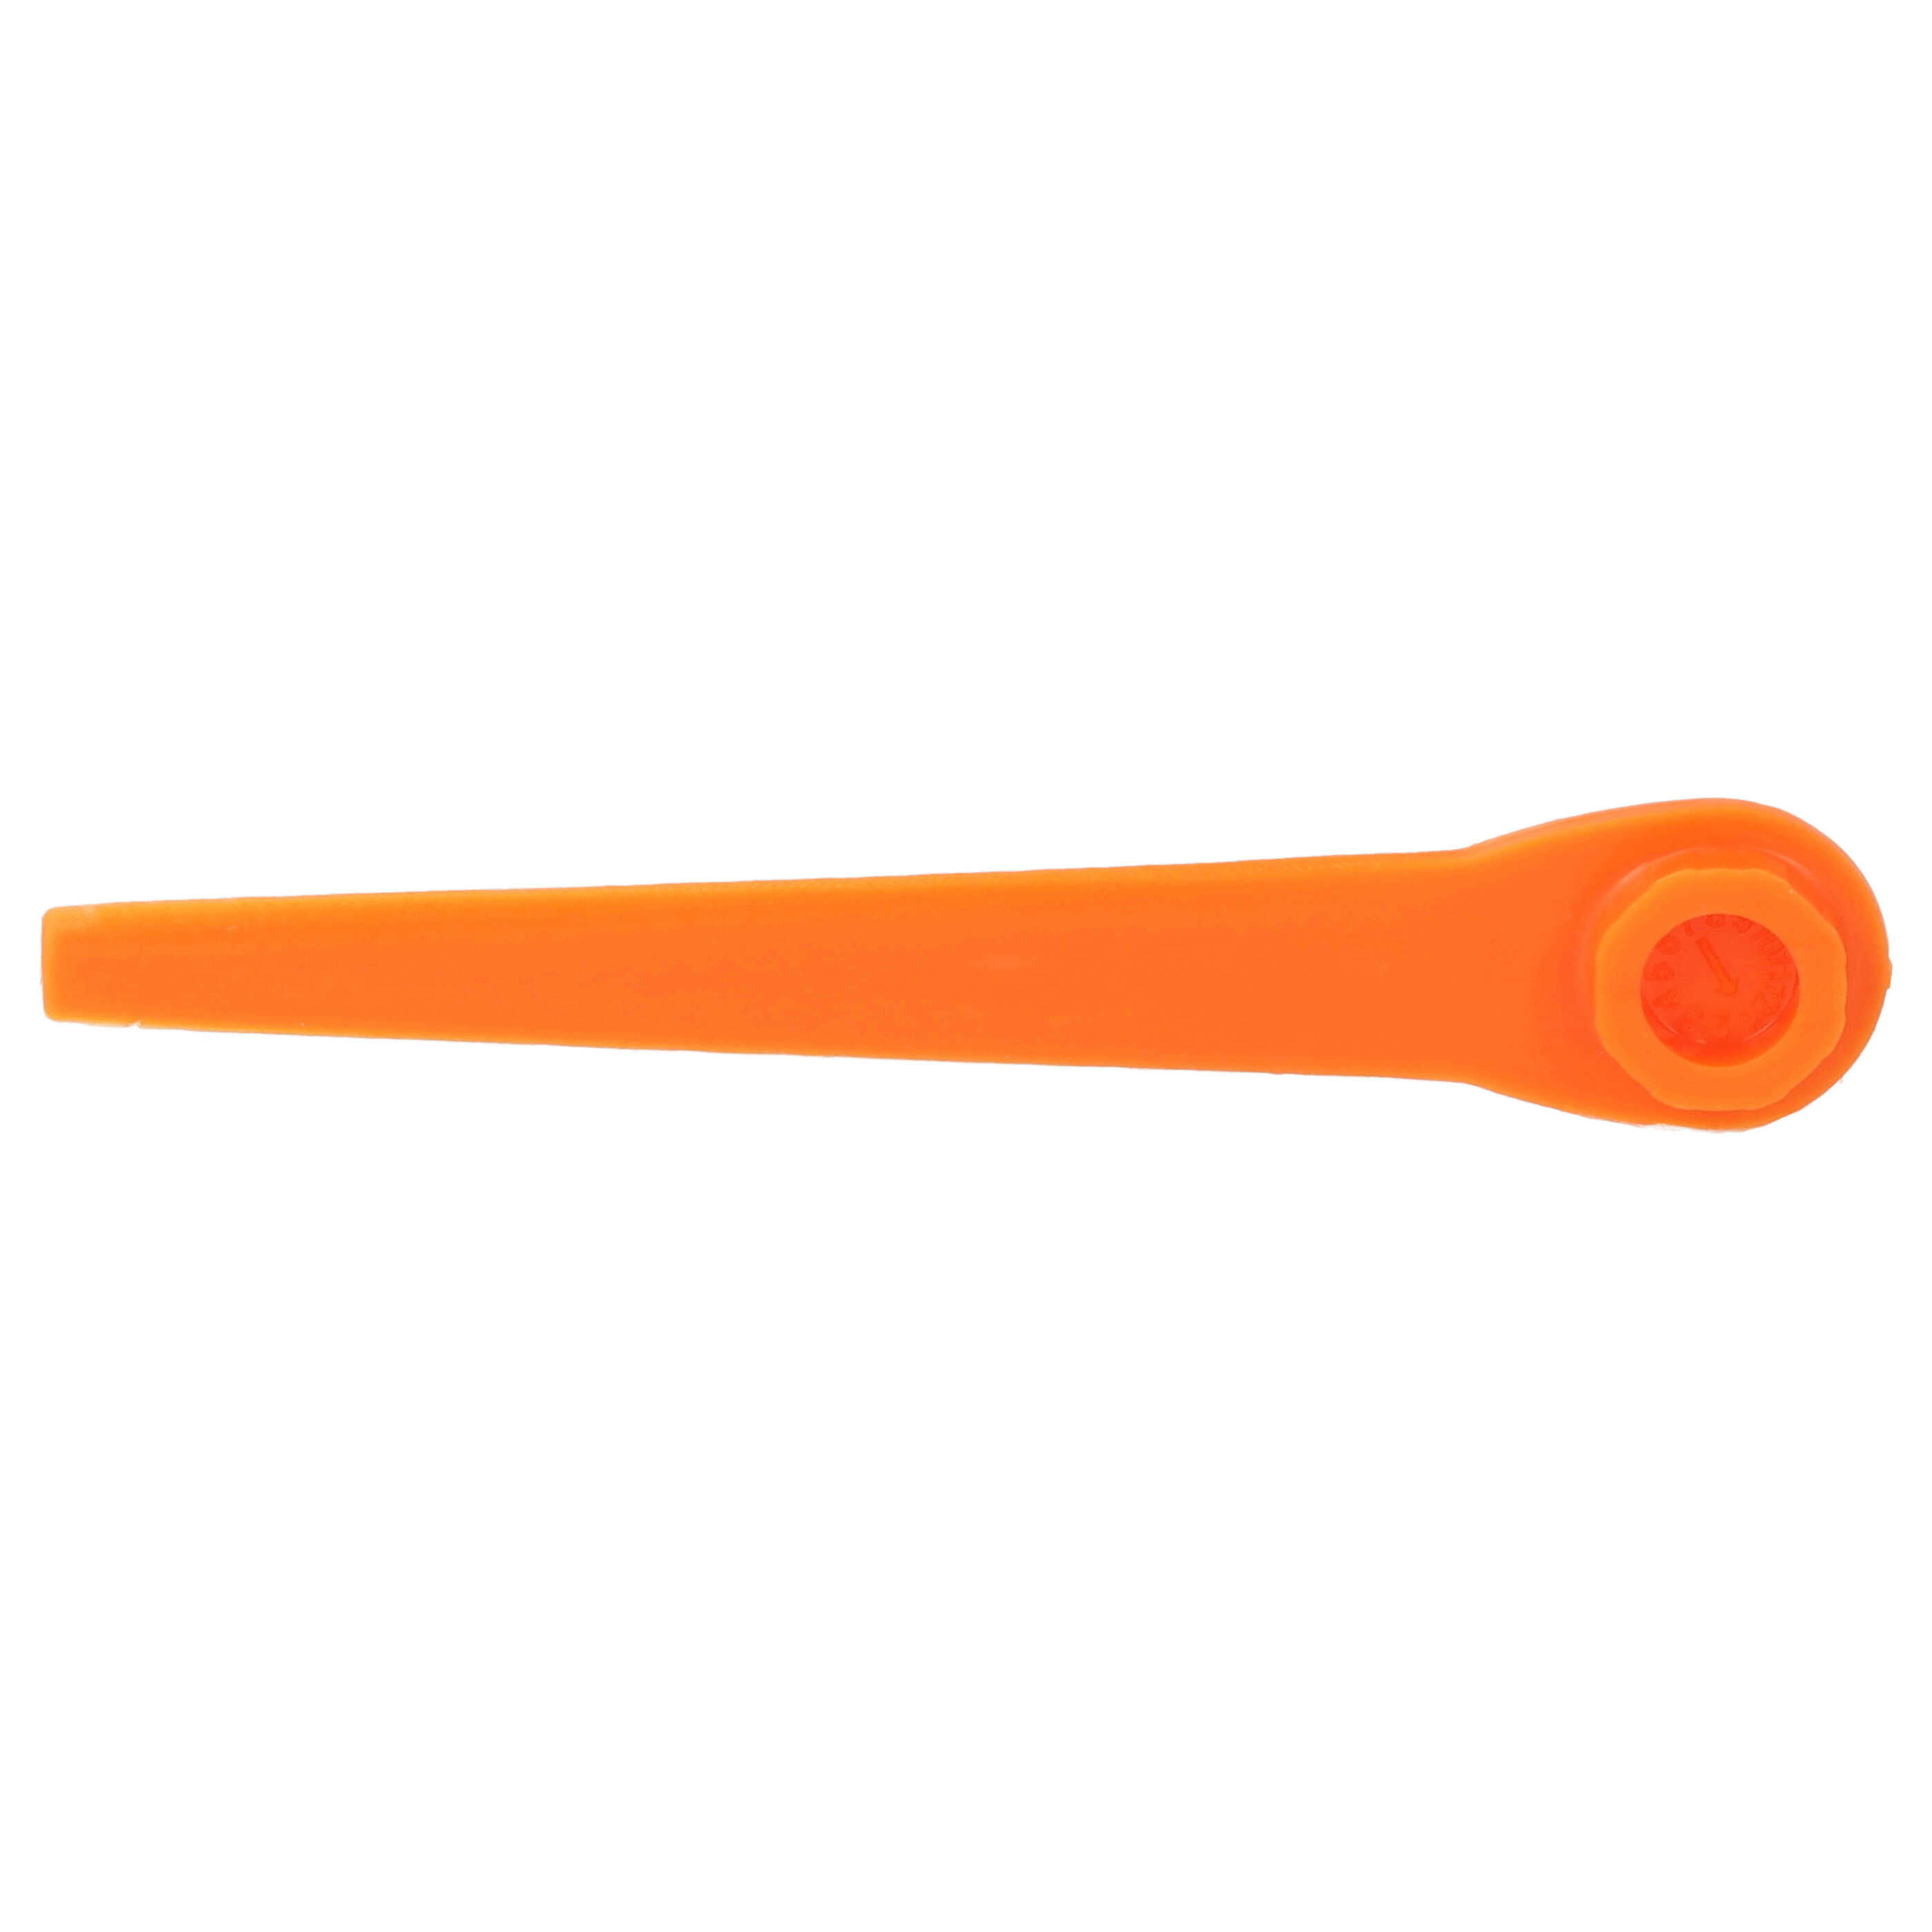 20x Lames remplace Gardena RotorCut 5368-20 pour débroussailleuse – Couteaux plastique, Orange